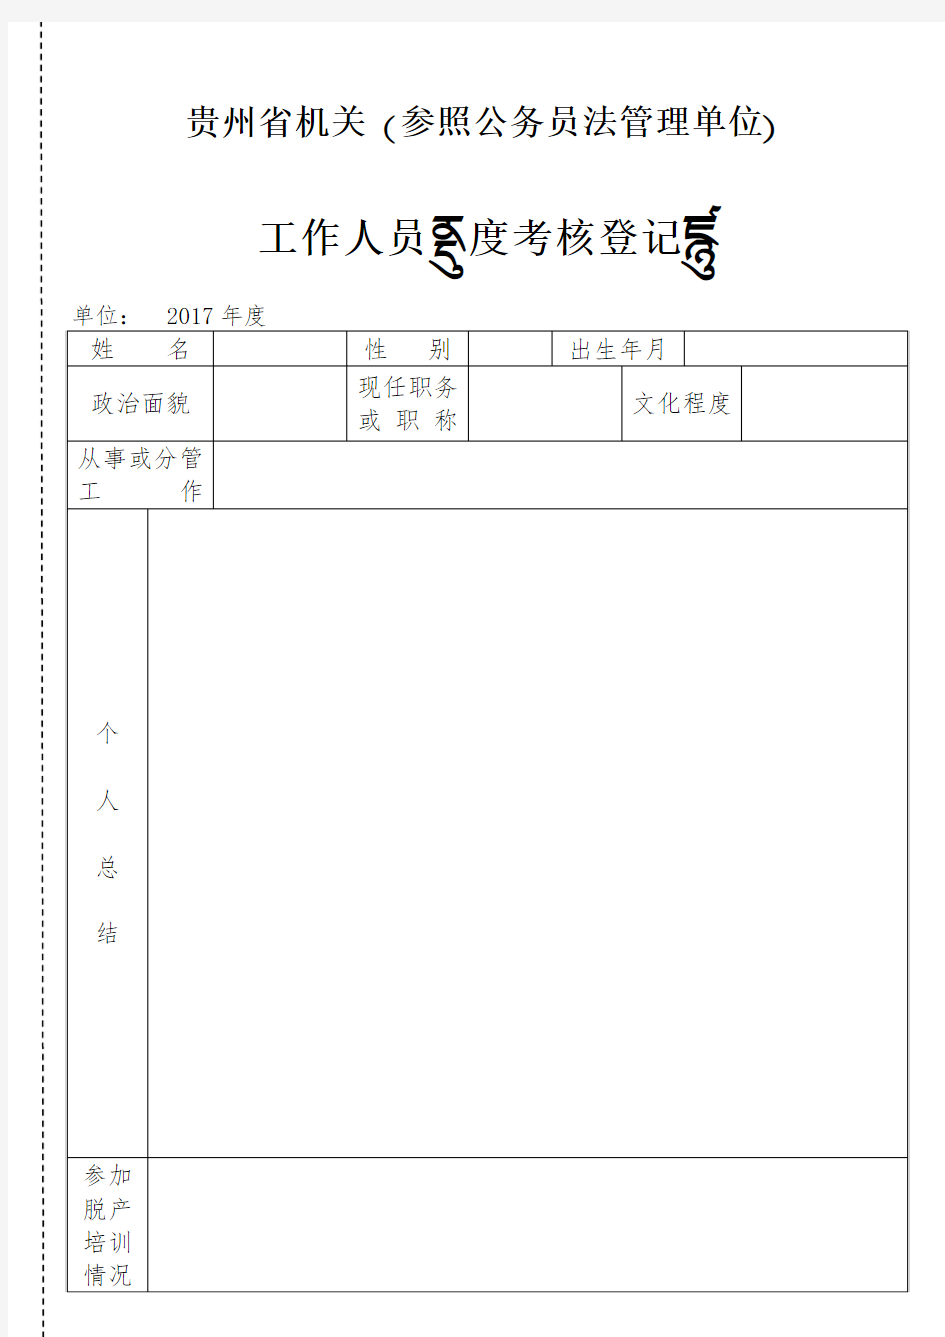 贵州省机关(参照公务员法管理单位)工作人员年度考核登记表